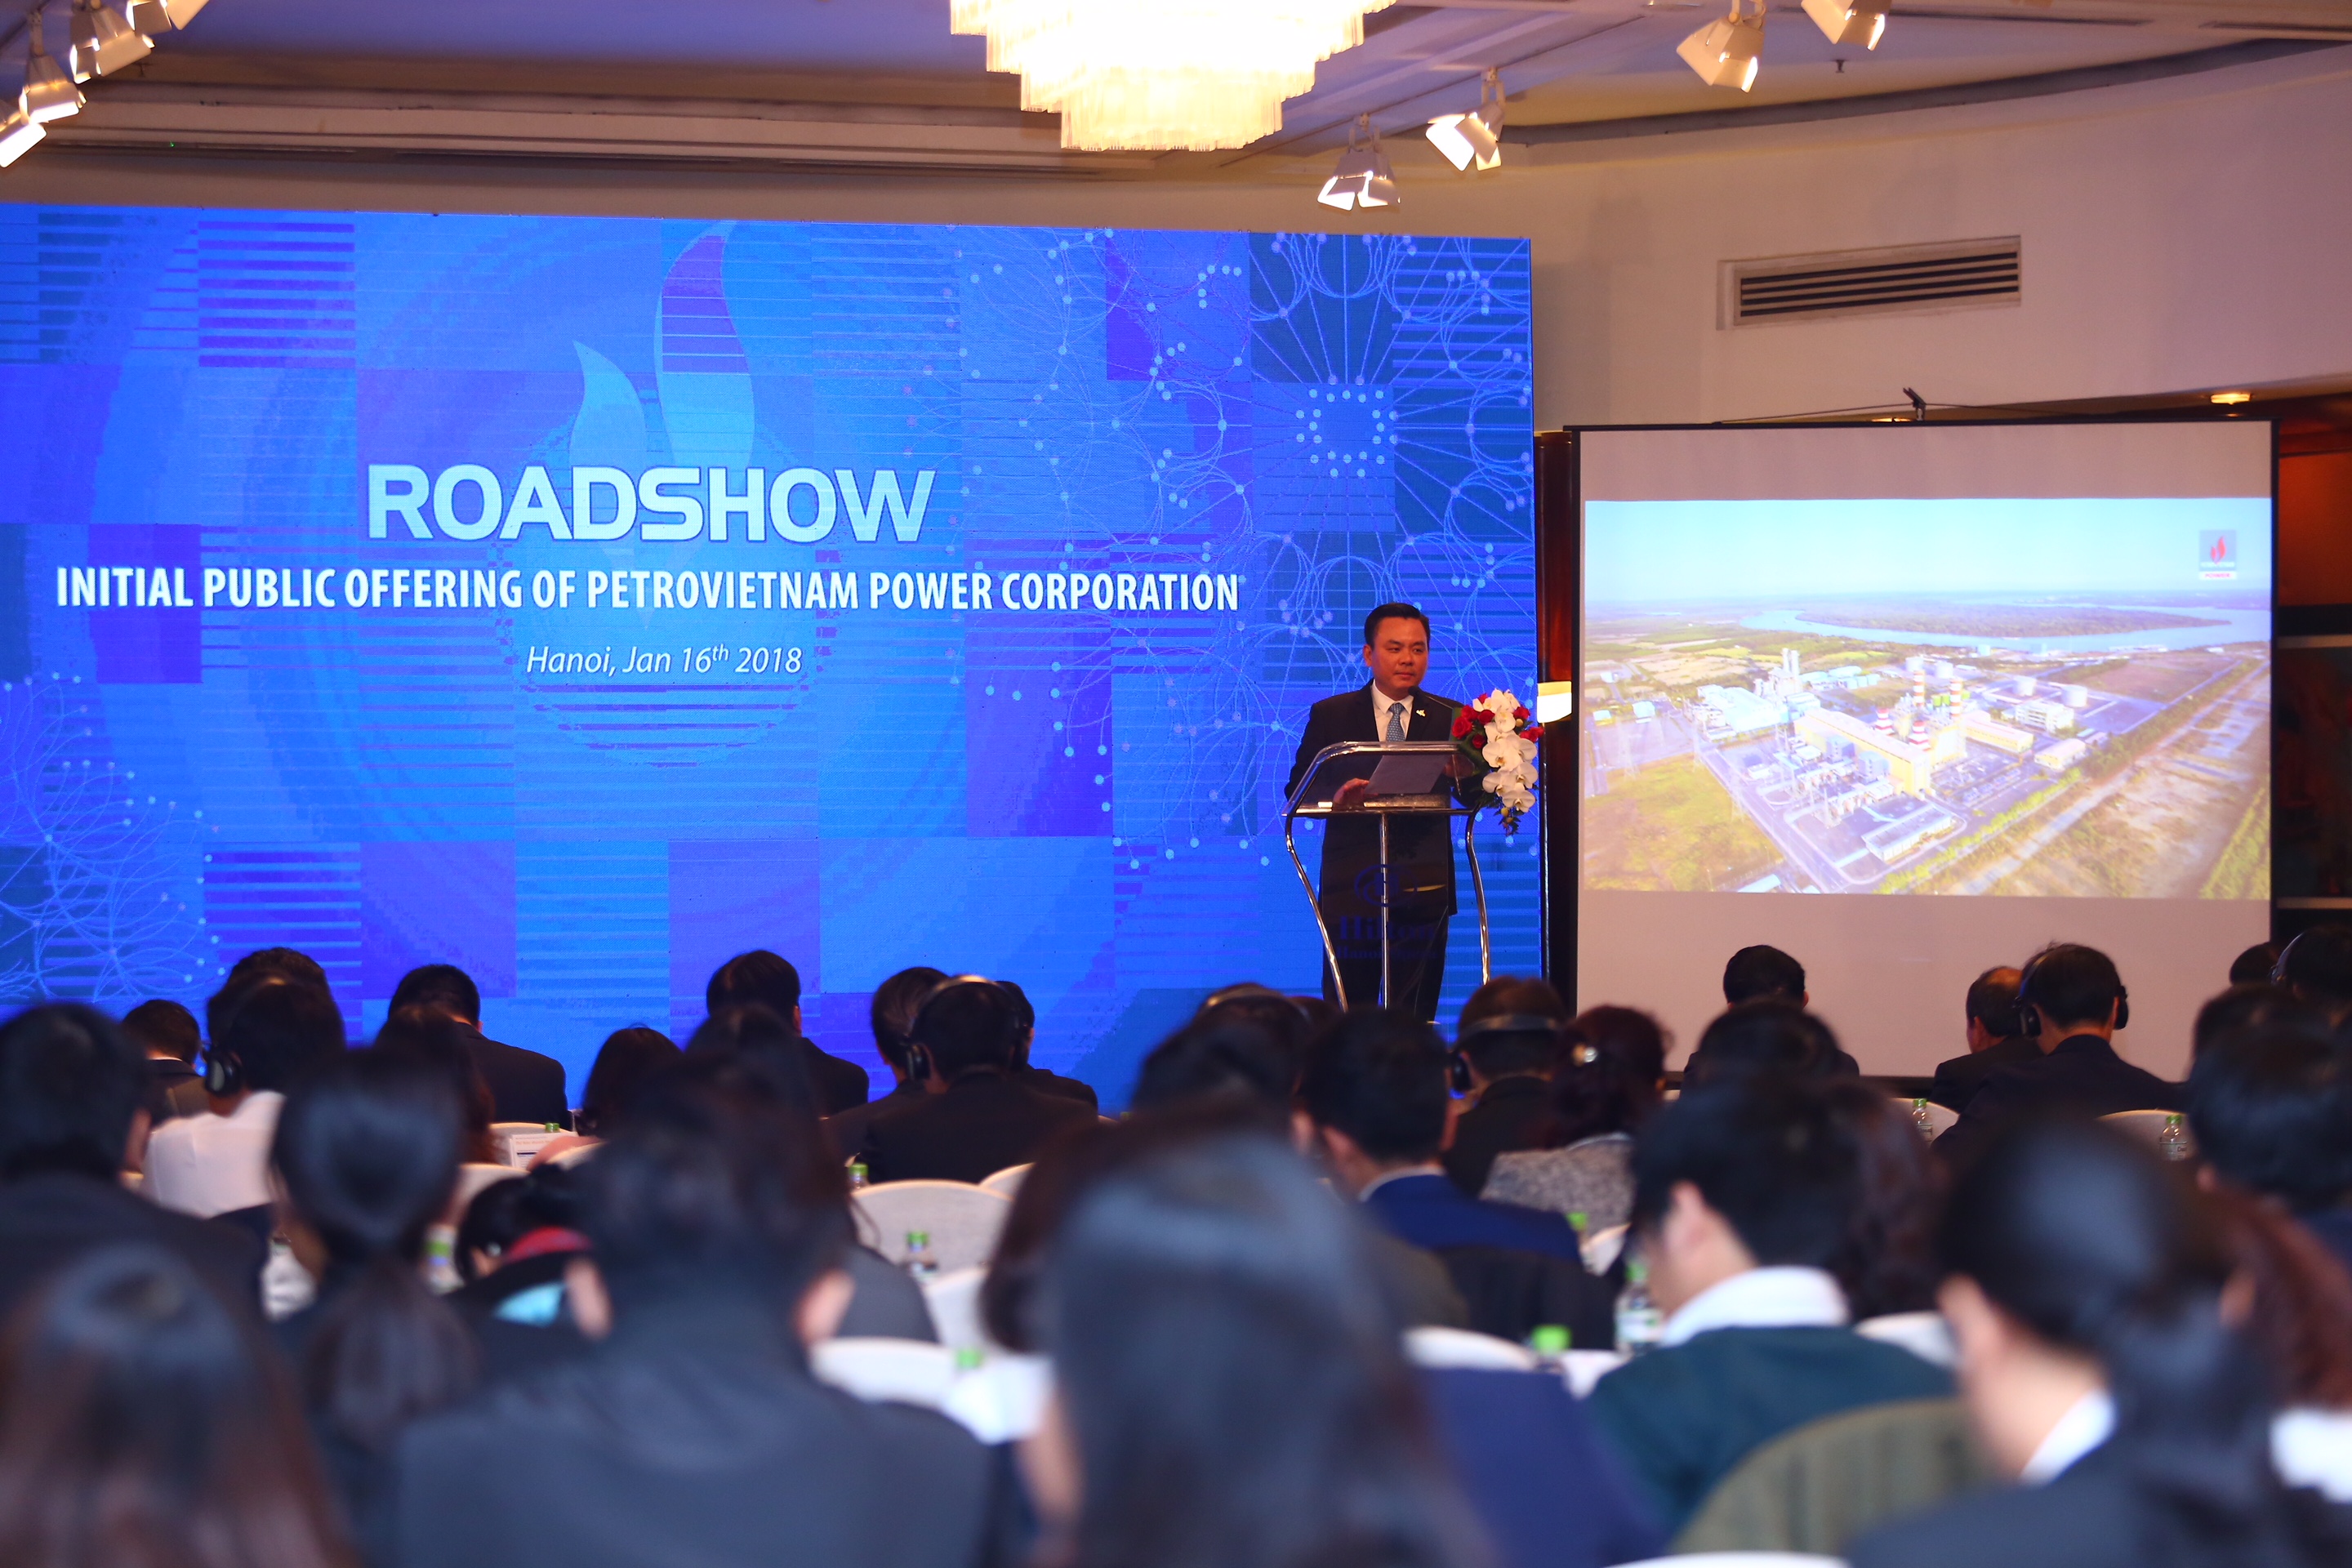 PV Power tổ chức Roadshow - Giới thiệu cơ hội đầu tư cổ phần PV Power tại Hà Nội